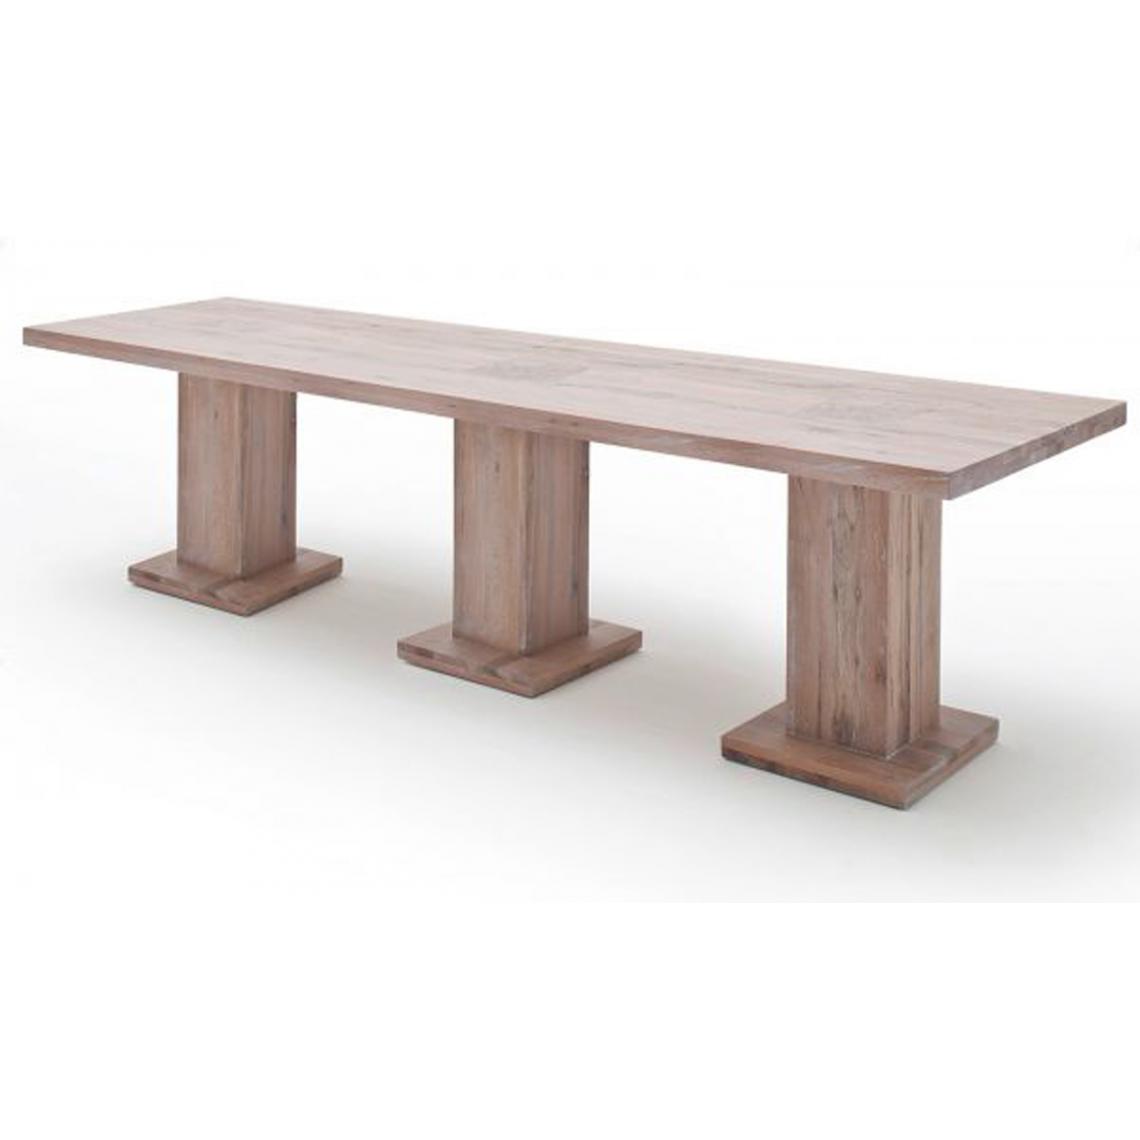 Pegane - Table à manger en chêne chaulé, laqué mat massif - L.300 x H.76 x P.120 cm -PEGANE- - Tables à manger